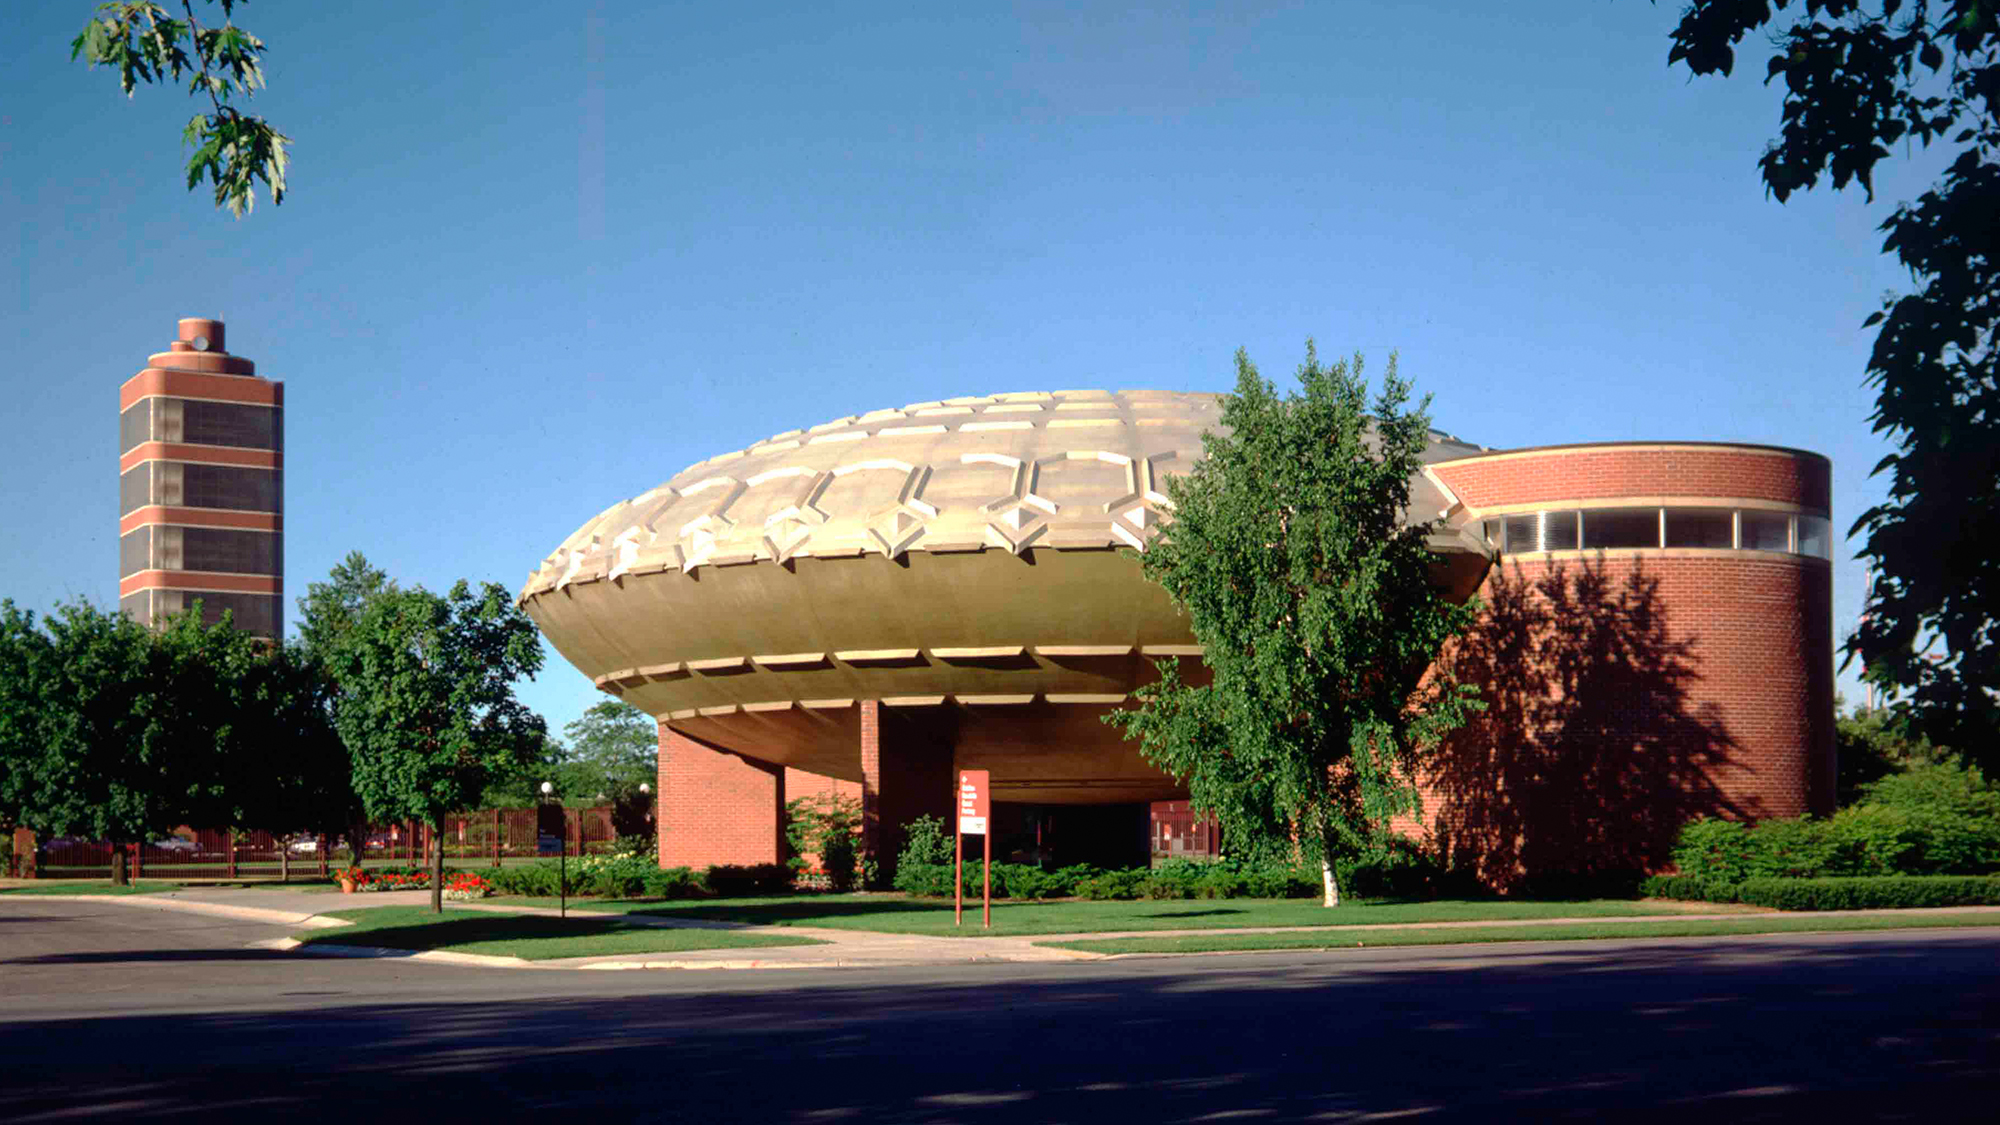 SC Johnson Golden Rondelle Theatre in Racine, Wisconsin